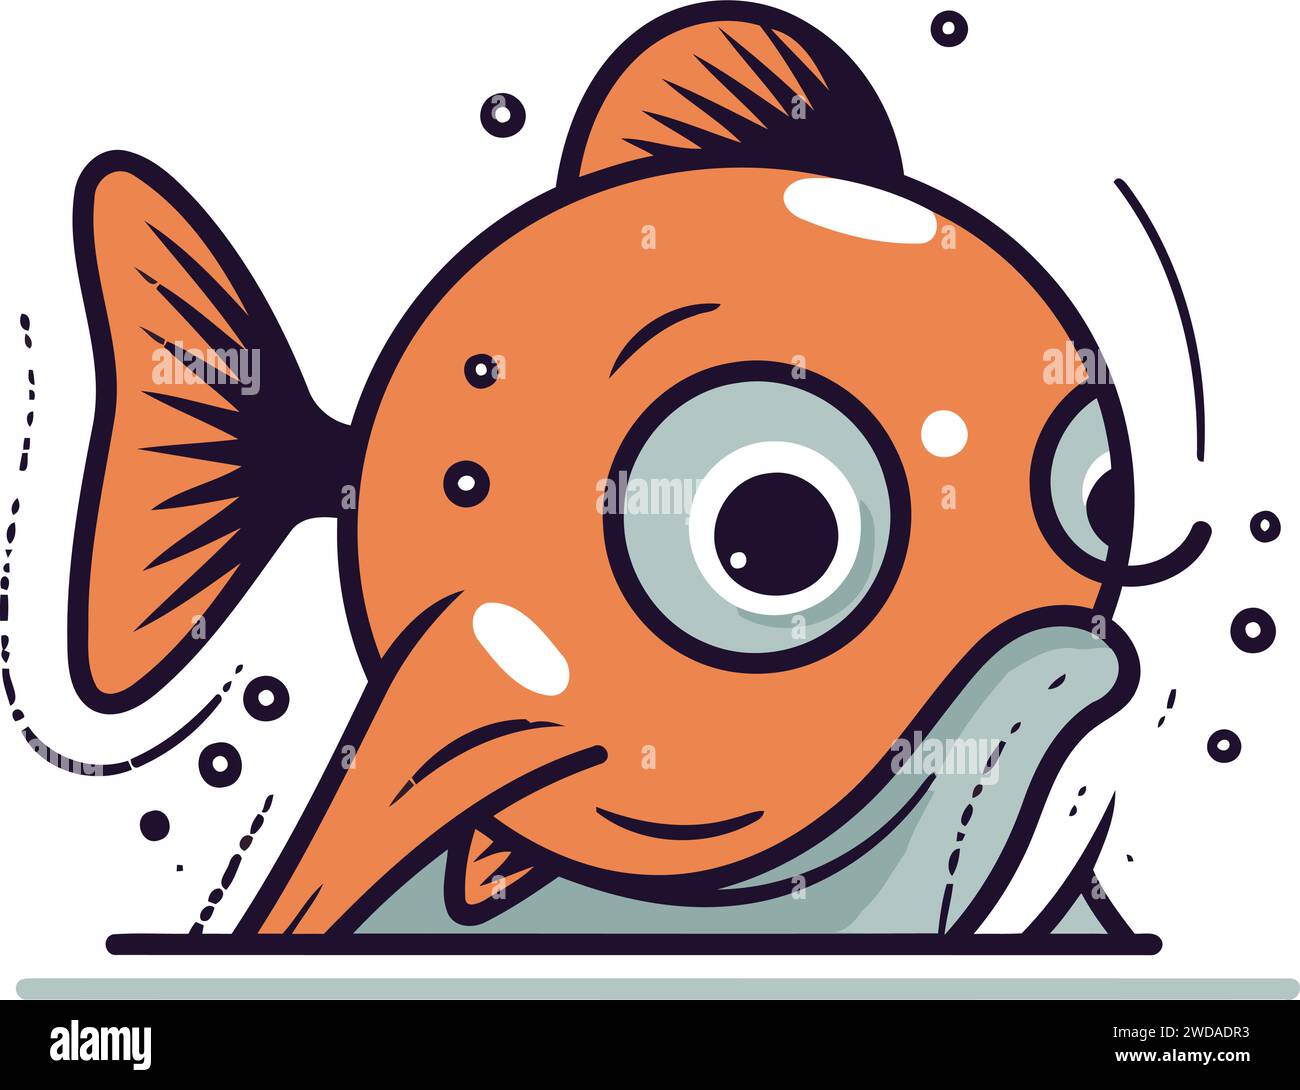 Poisson drôle de dessin animé. Illustration vectorielle d'un poisson de dessin animé mignon. Illustration de Vecteur